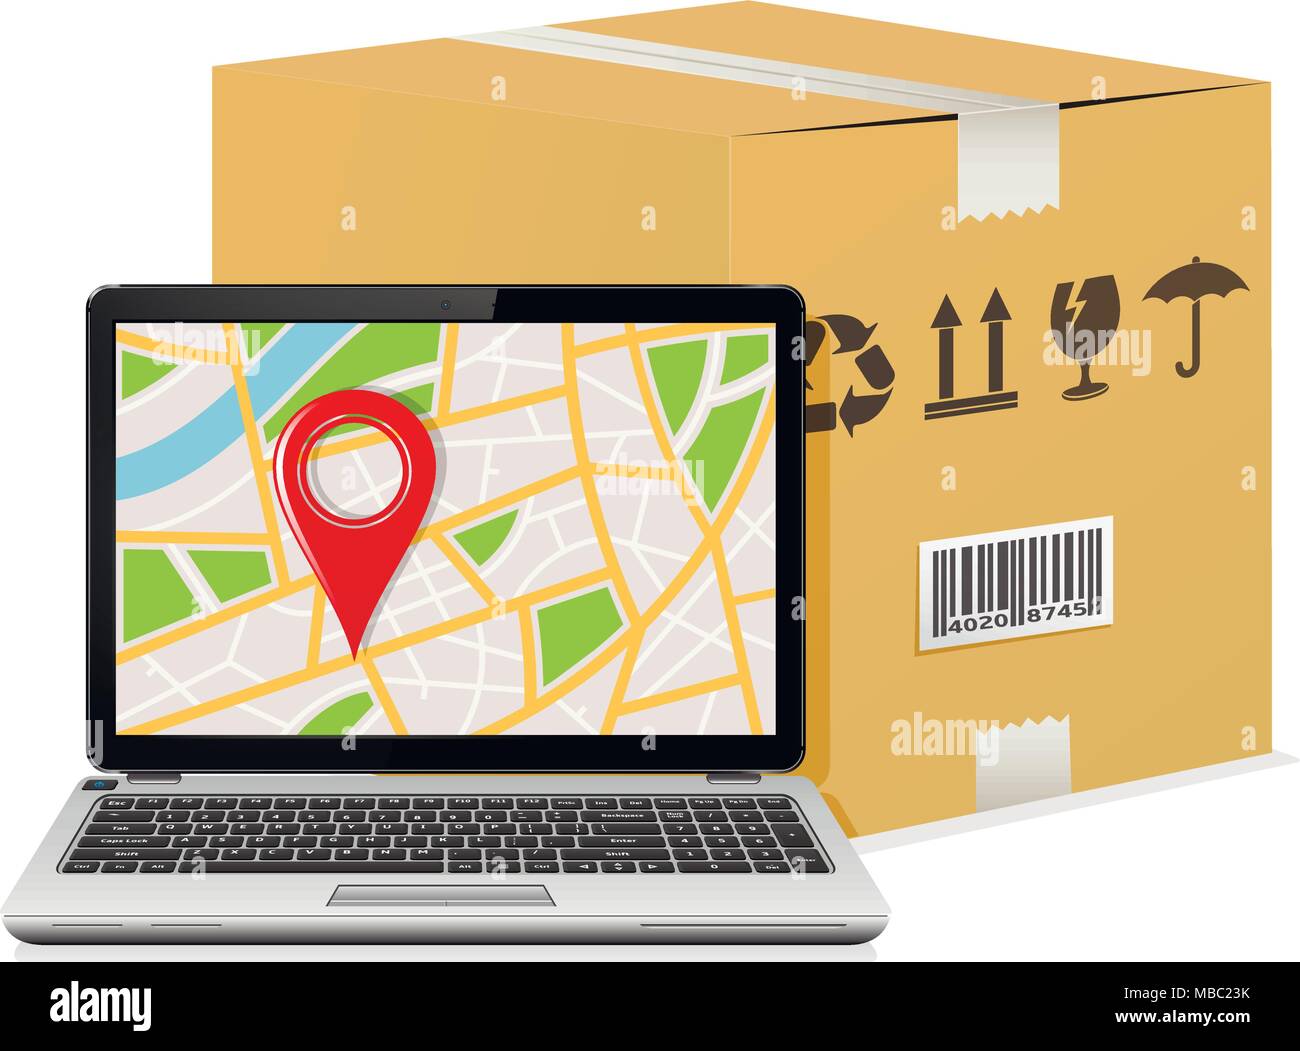 Versand Sendungsverfolgung um Design. Laptop mit GPS-Karte auf dem Bildschirm und Versand Karton. Stock Vektor